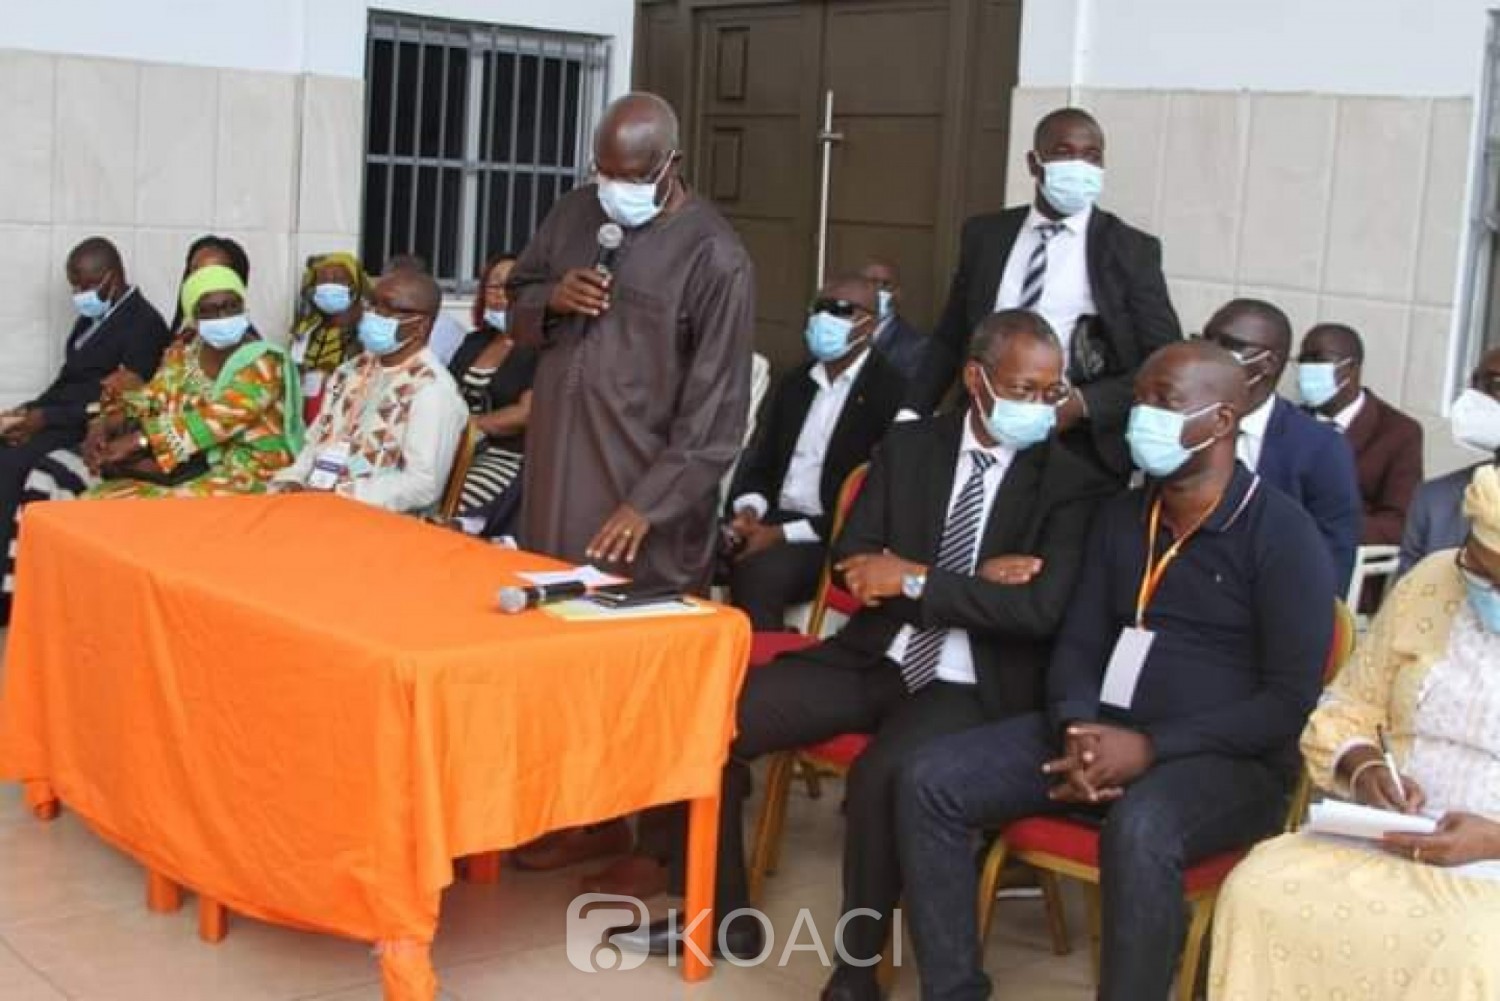 Côte d'Ivoire : Yopougon, répondant aux pics des candidats EDS-PDCI, Kafana à son commando « Notre ambition est de clore ici un débat à Yopougon »